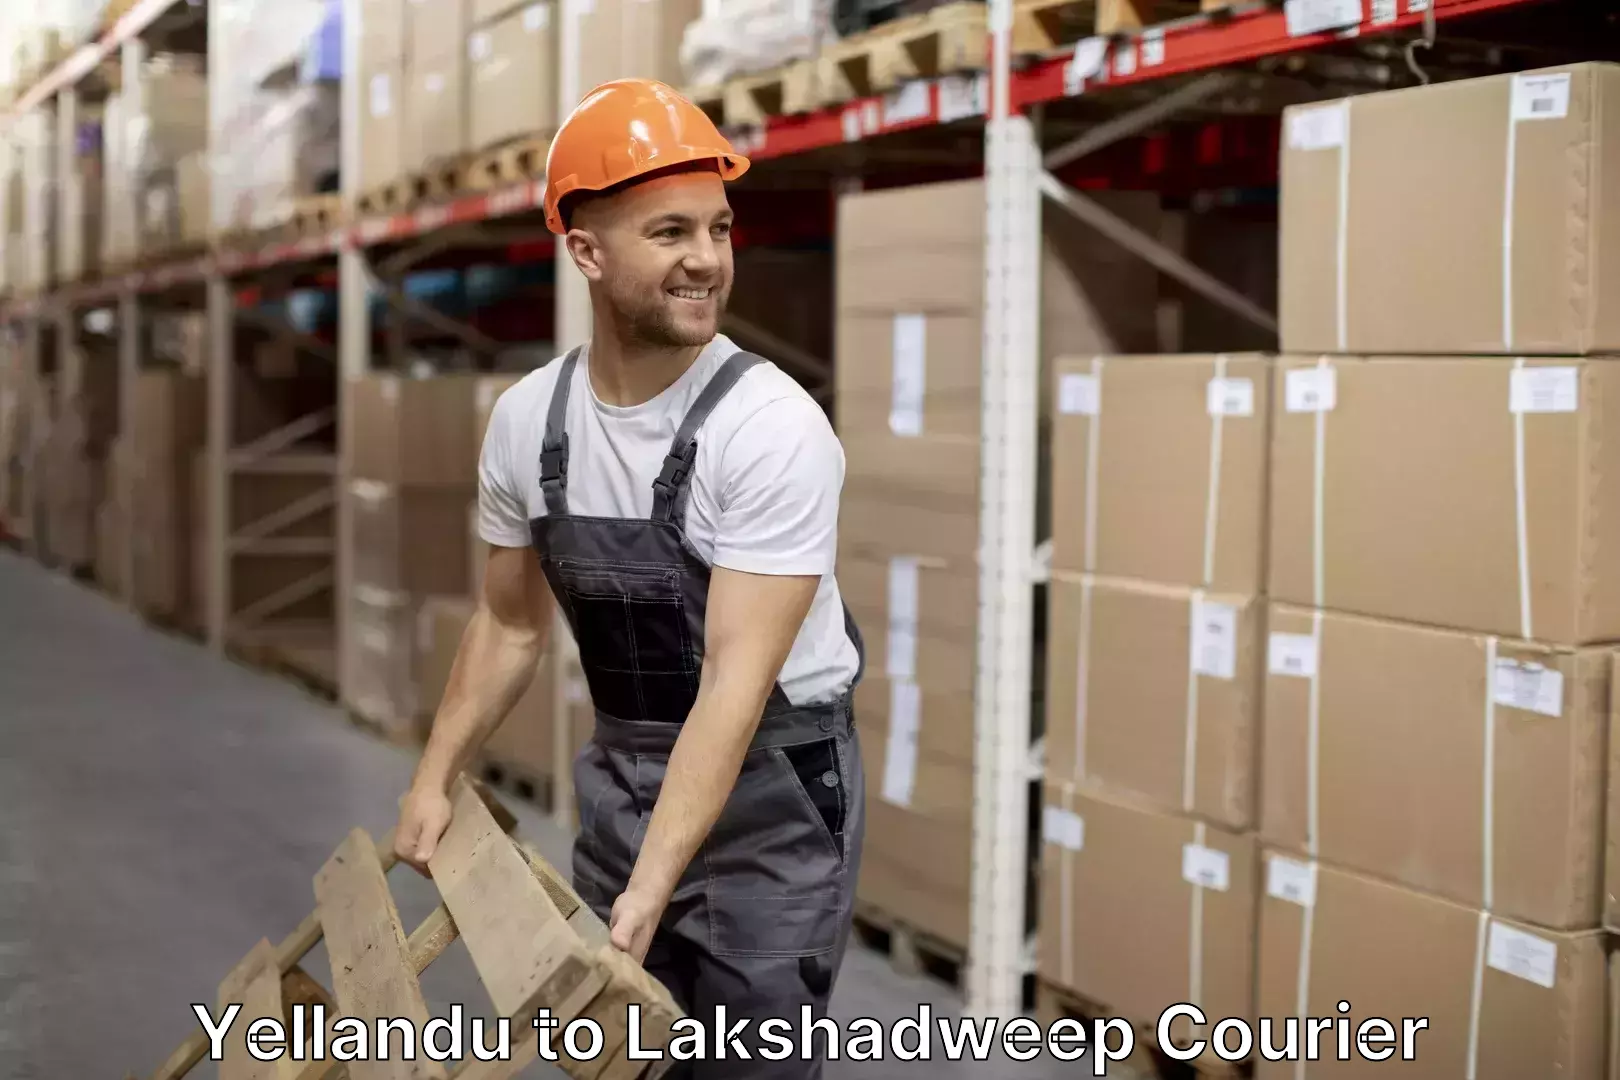 Furniture moving experts Yellandu to Lakshadweep